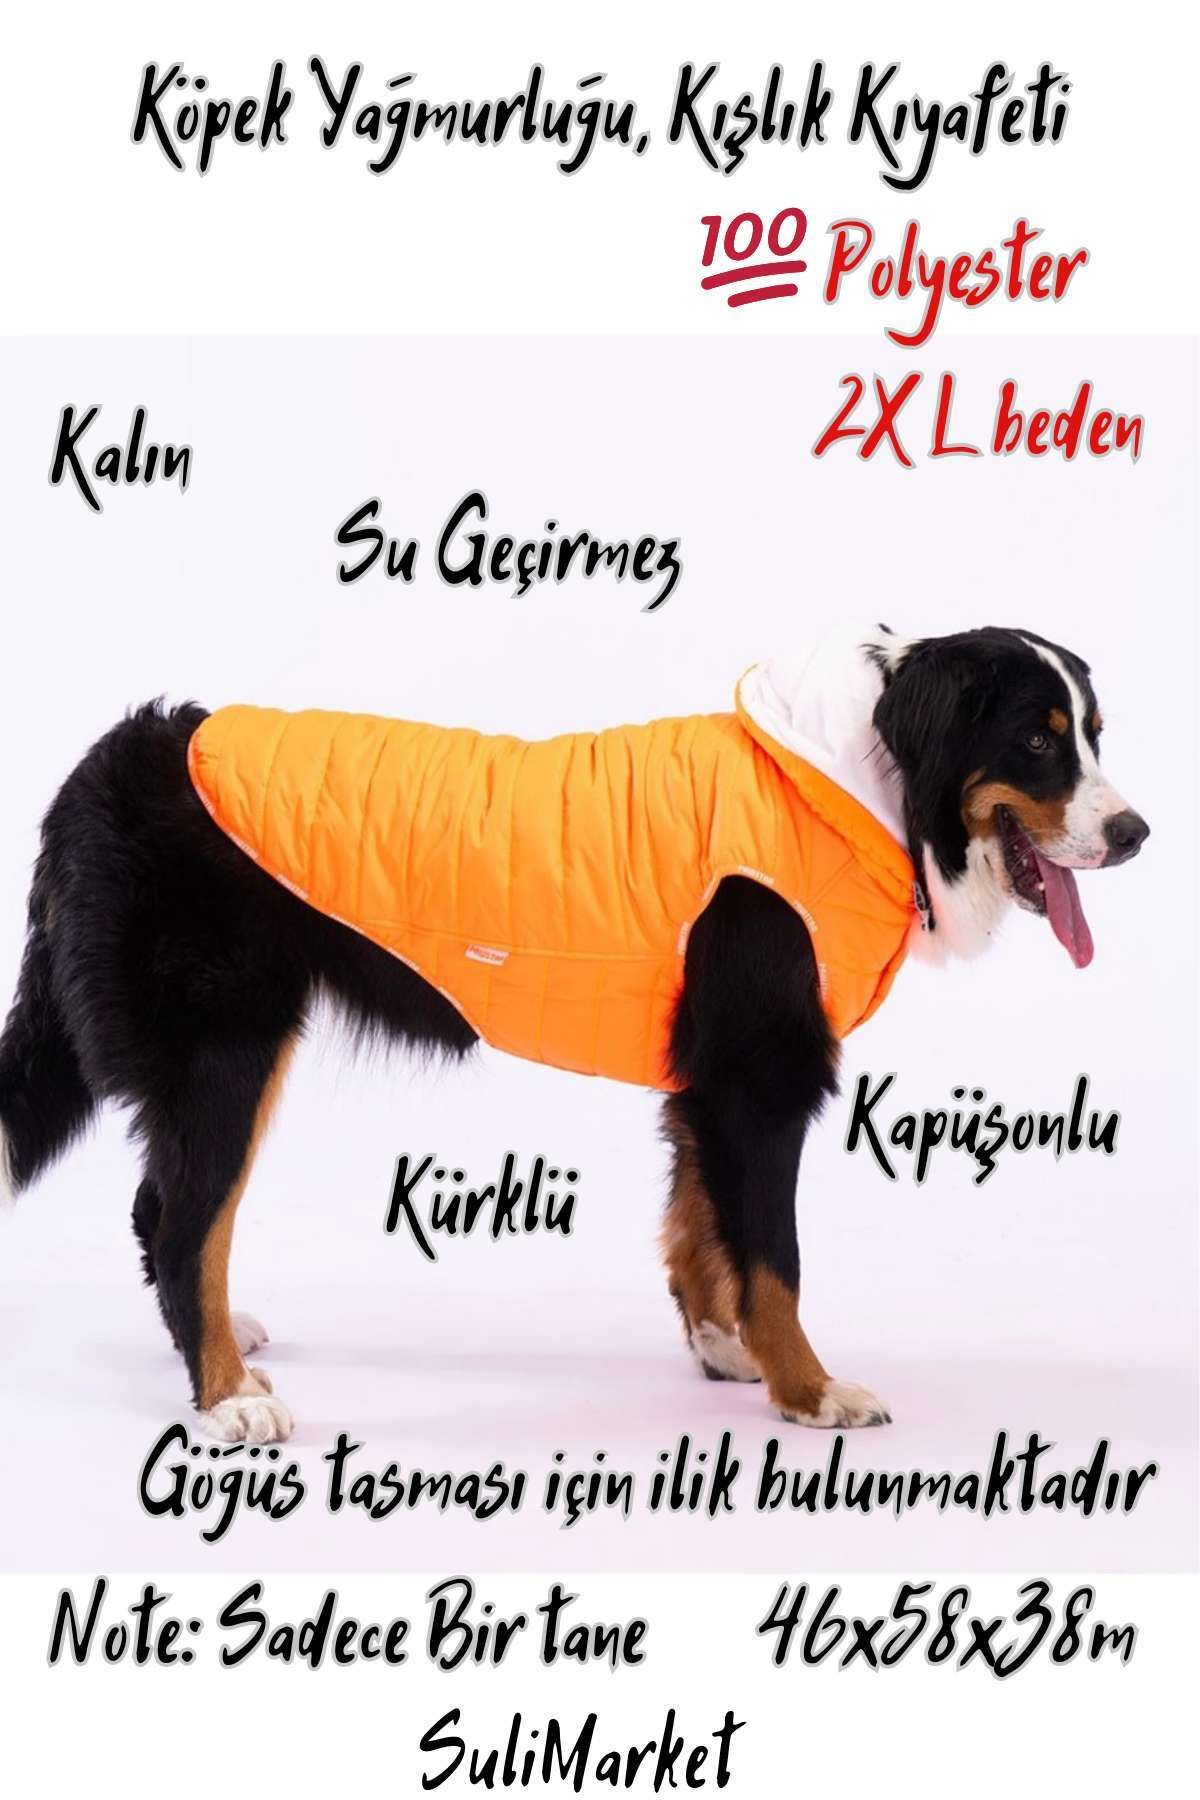 Pawstar Büyük Irk Köpek Yağmurluğu Köpek Yağmurluk ve Kışlık Kıyafeti